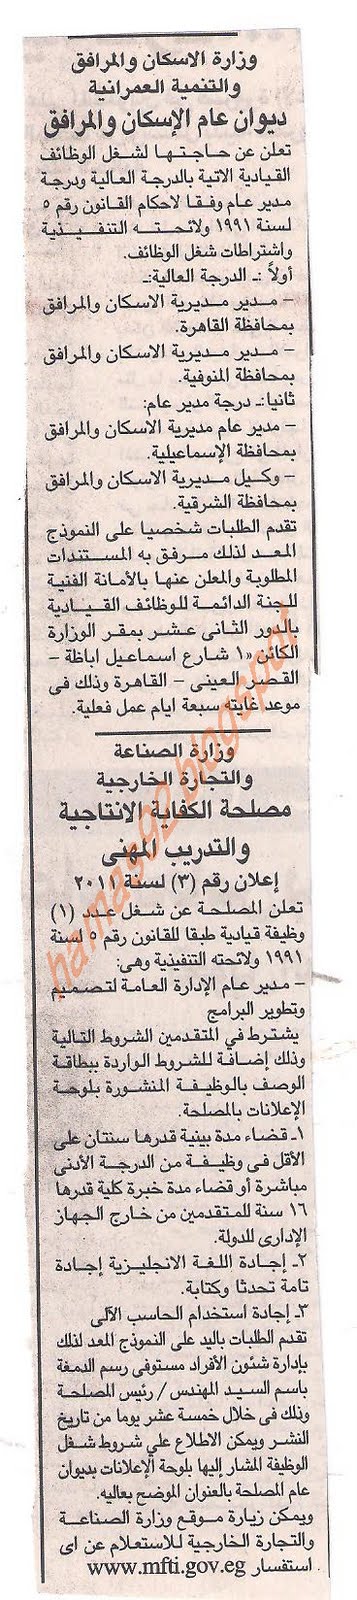 وظائف خالية من جريدة الجمهورية الجمعة 15 يوليو 2011 Picture+014